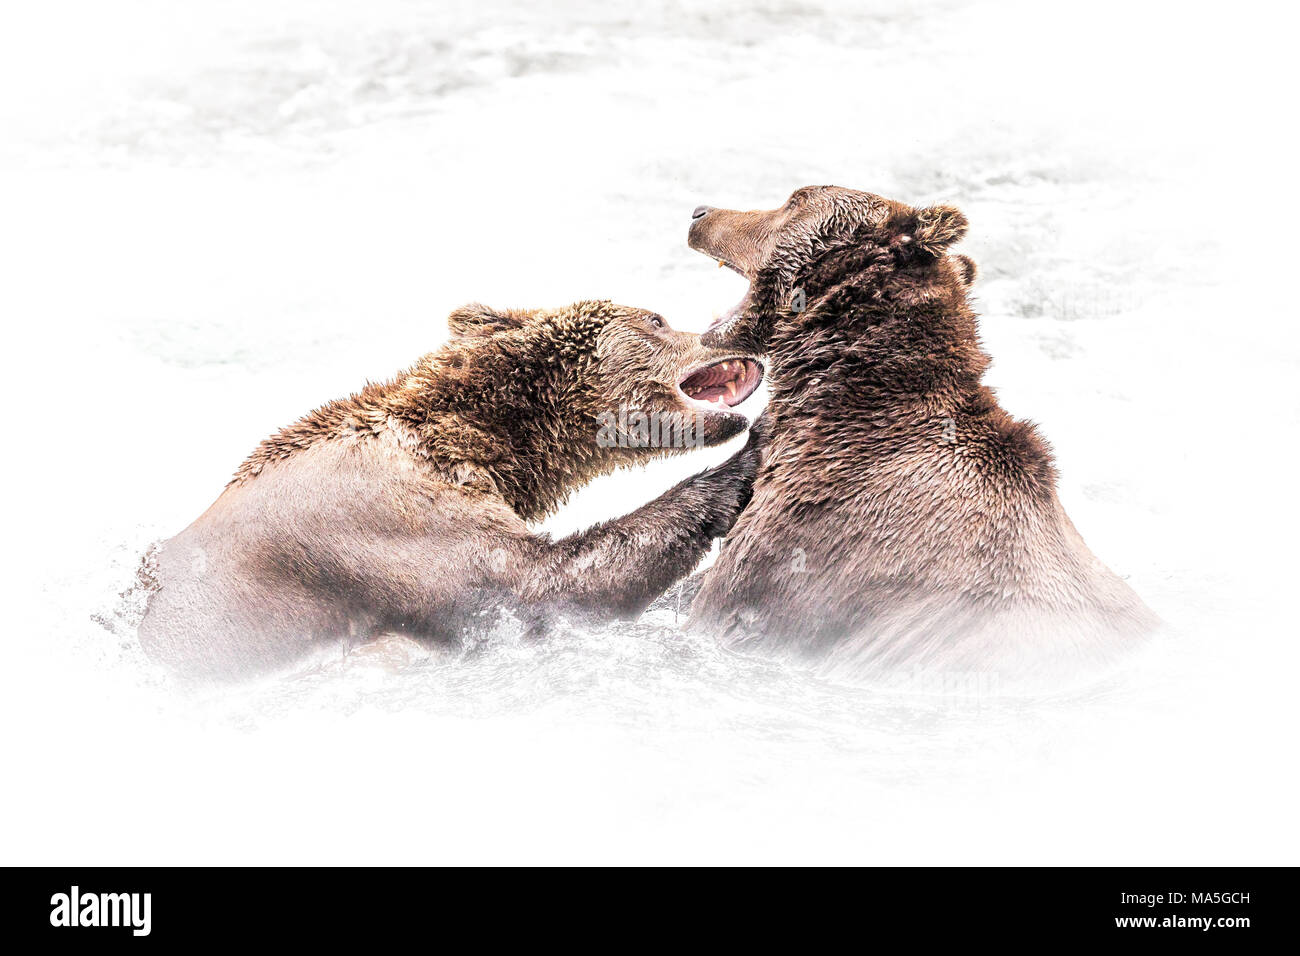 Ours brun (Ursus arctos) alascensis, Brooks falls, Katmai National Park et préserver, péninsule de l'Alaska, dans l'ouest de l'Alaska, États-Unis d'Amérique Banque D'Images